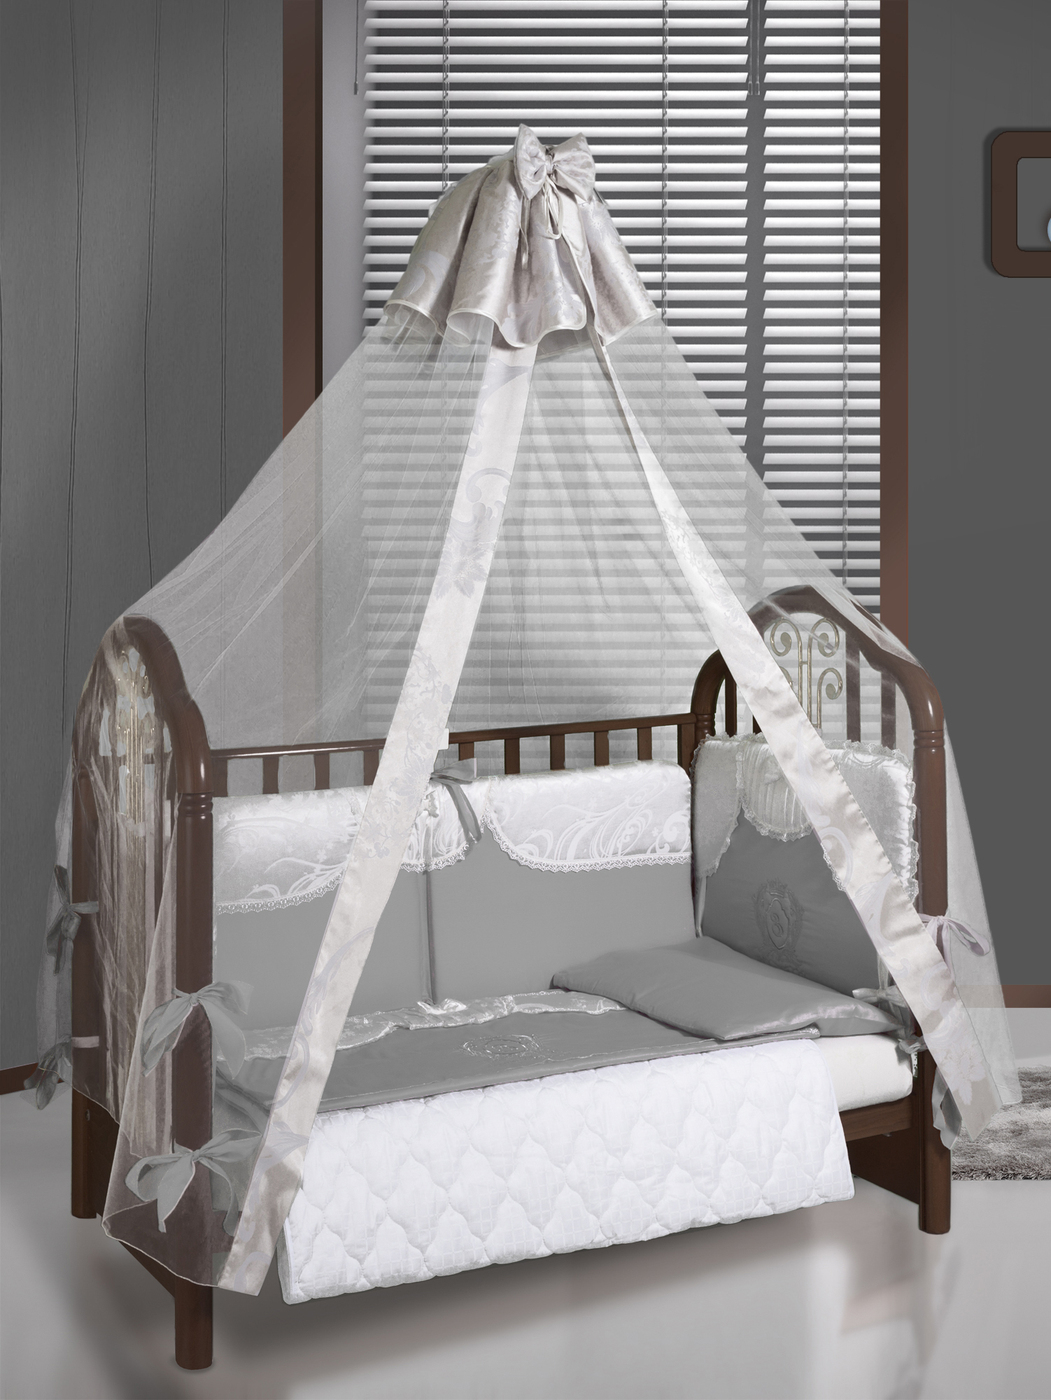 балдахин на детскую кроватку для новорожденных фото